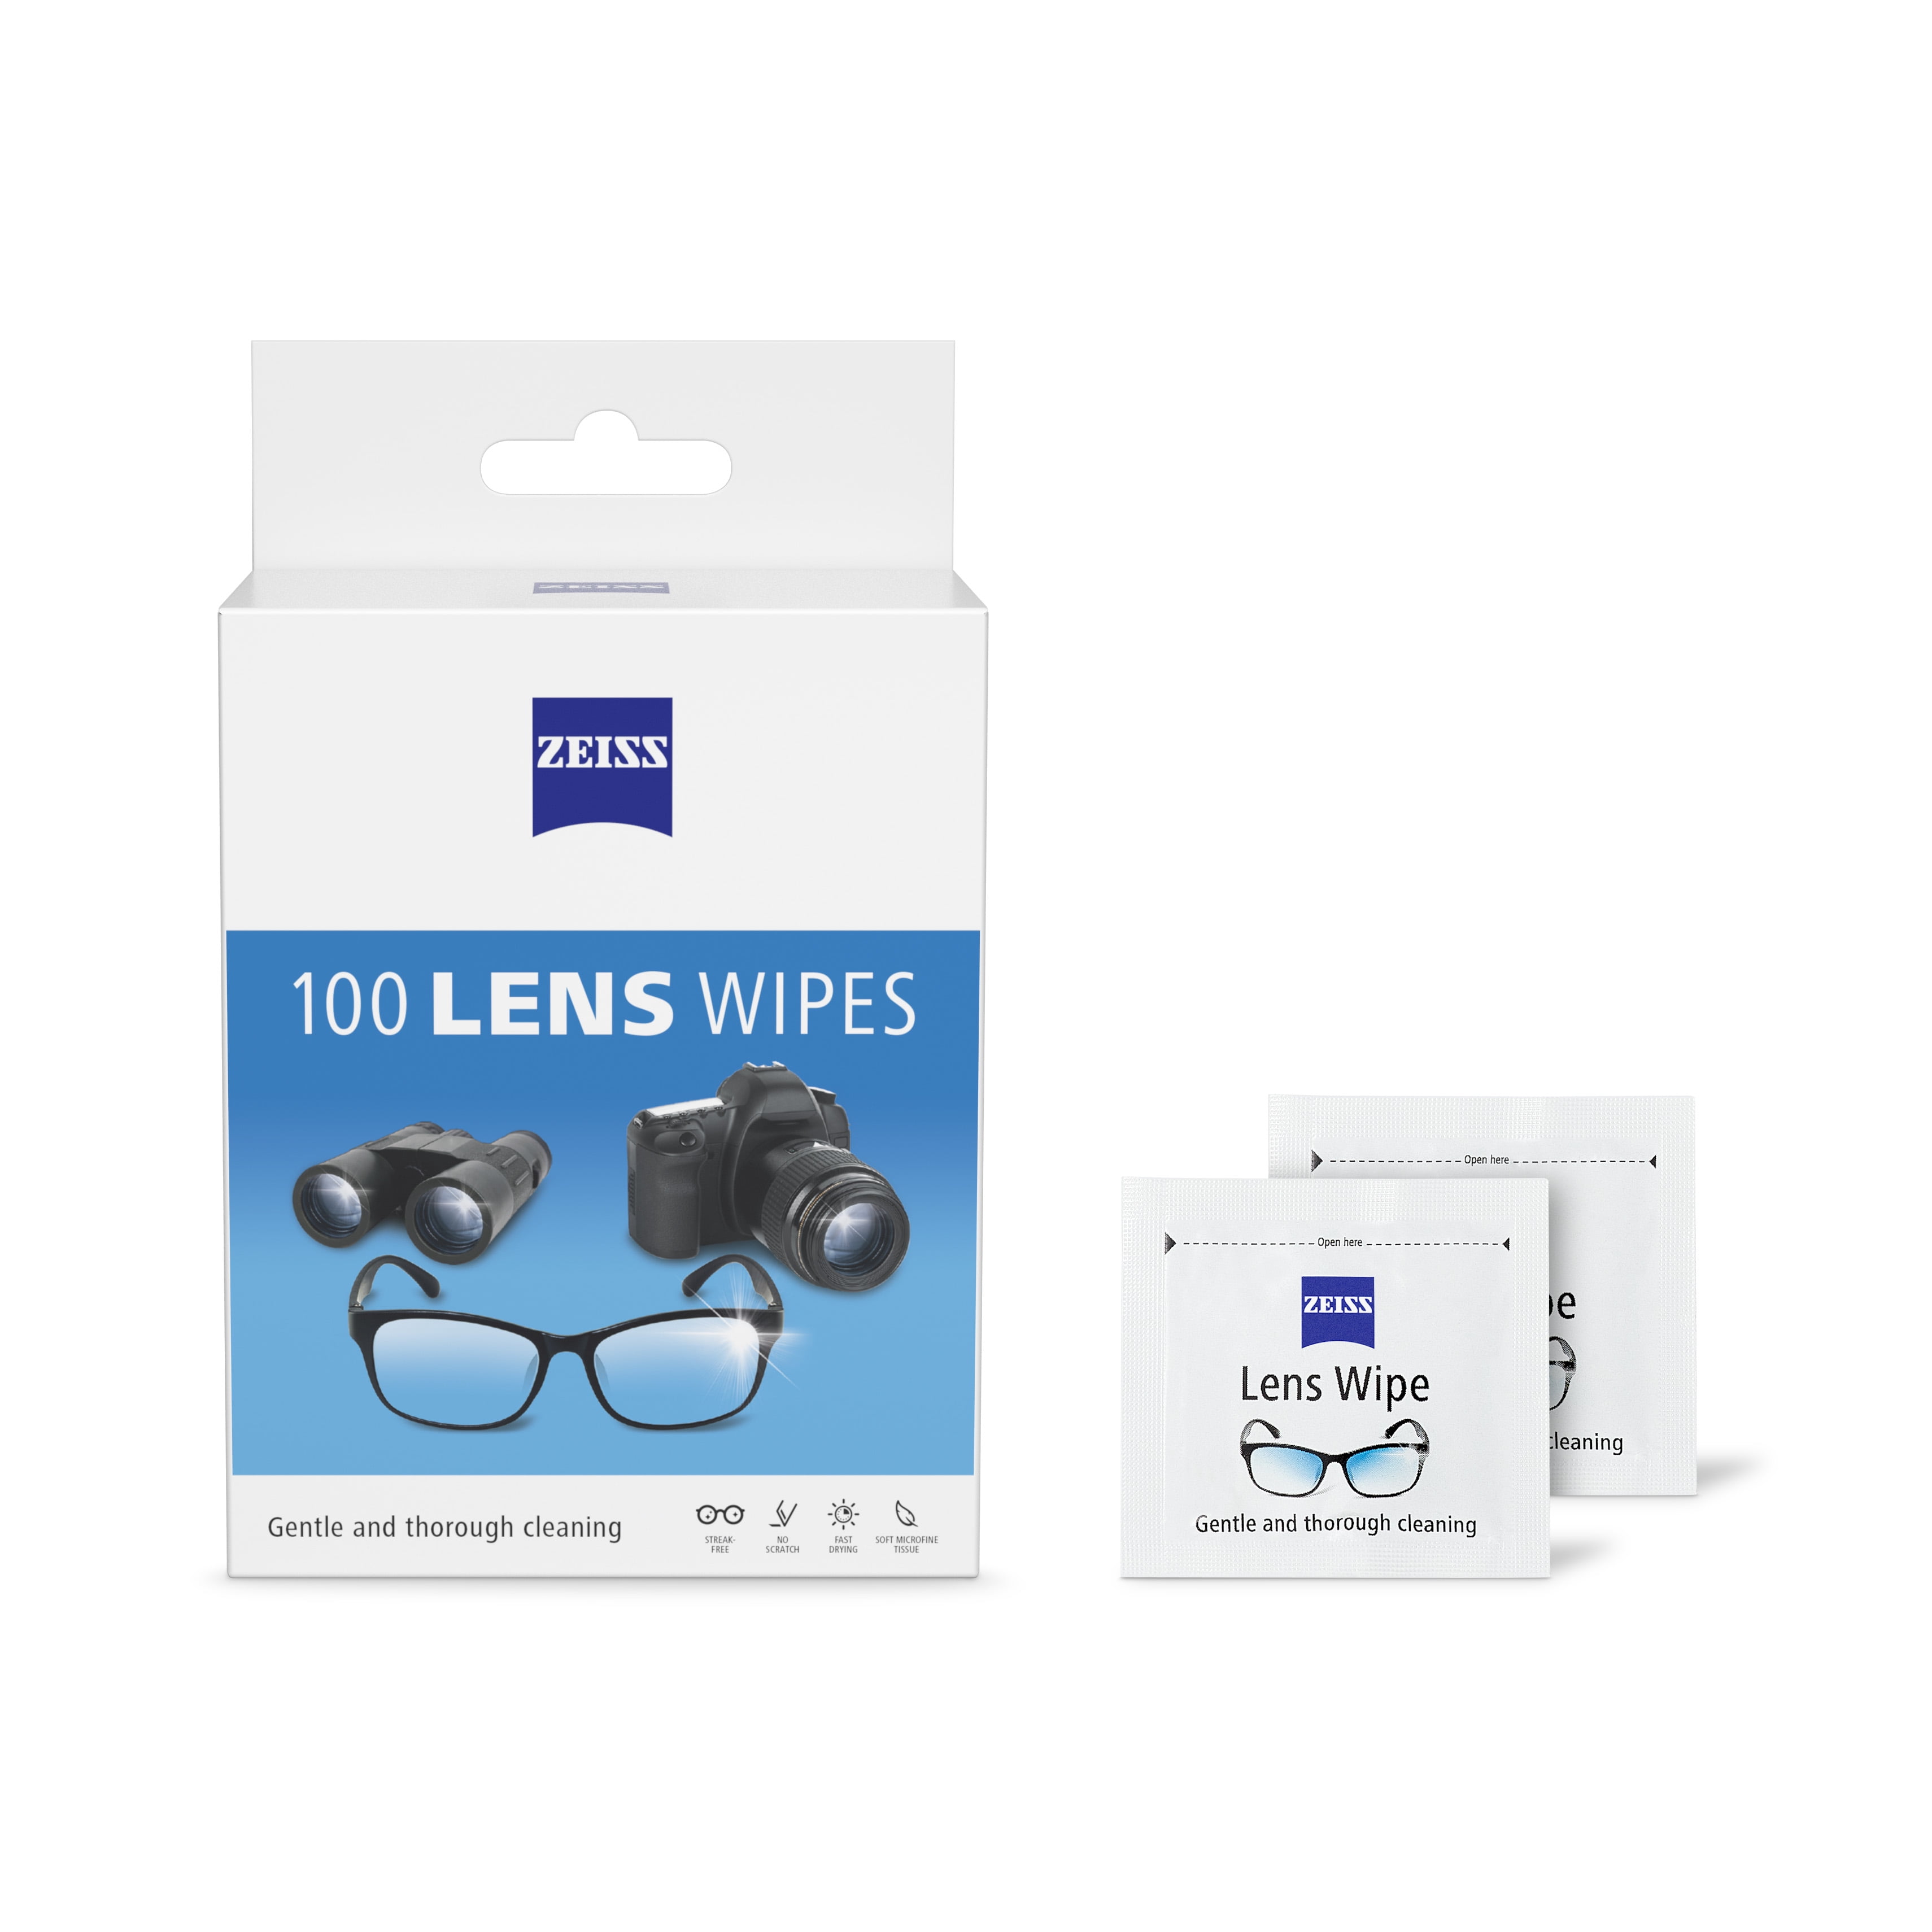 Metene Lens Wipes, Pre-Moistened Eye Glass Cleaner Wipes, 100 Count